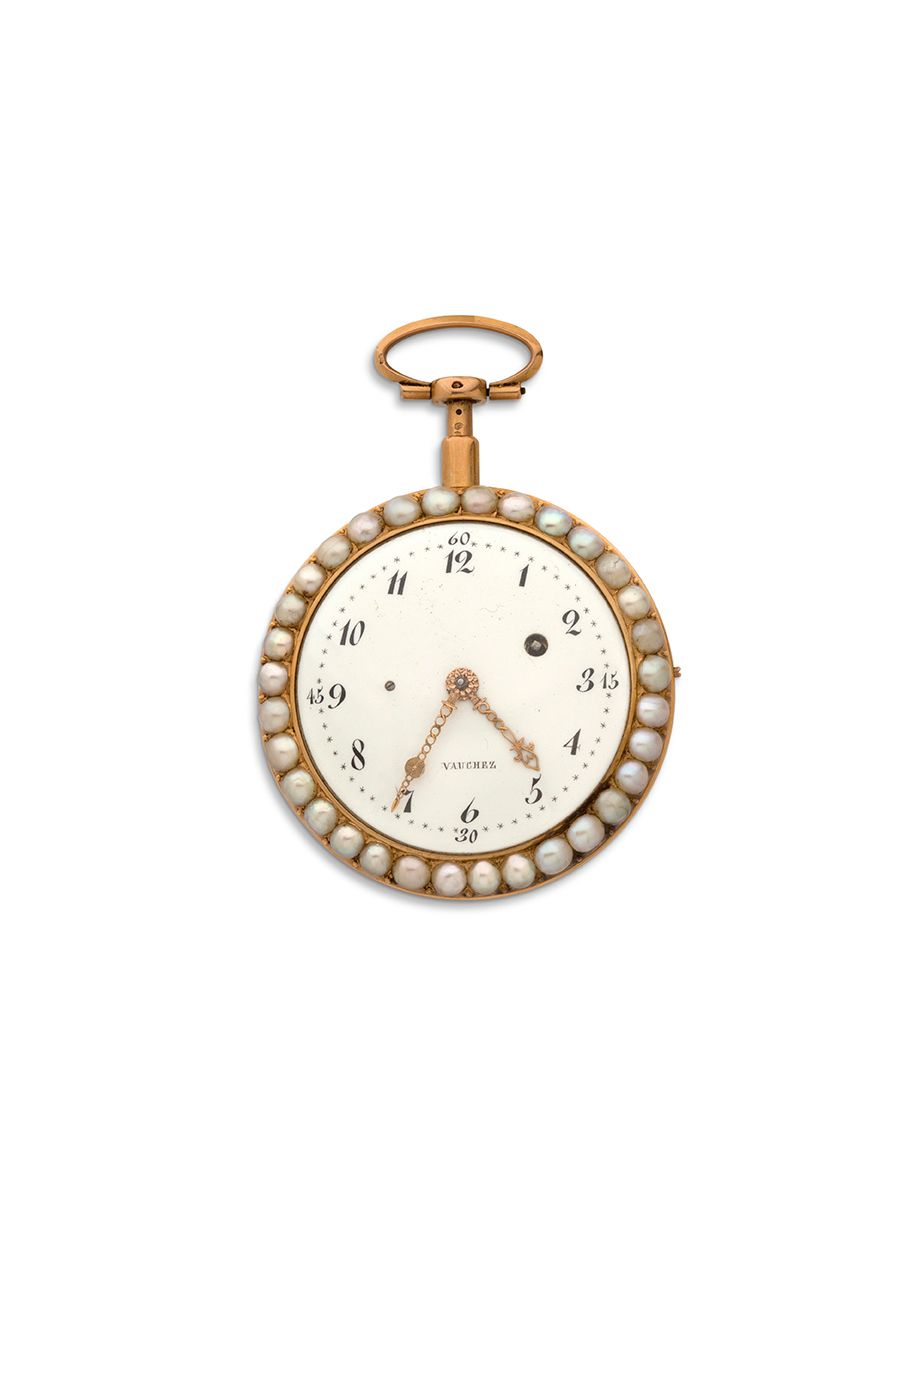 VAUCHEZ, Paris 
Reloj de oro con mecanismo de sondeo y marco de media perla dobl&hellip;